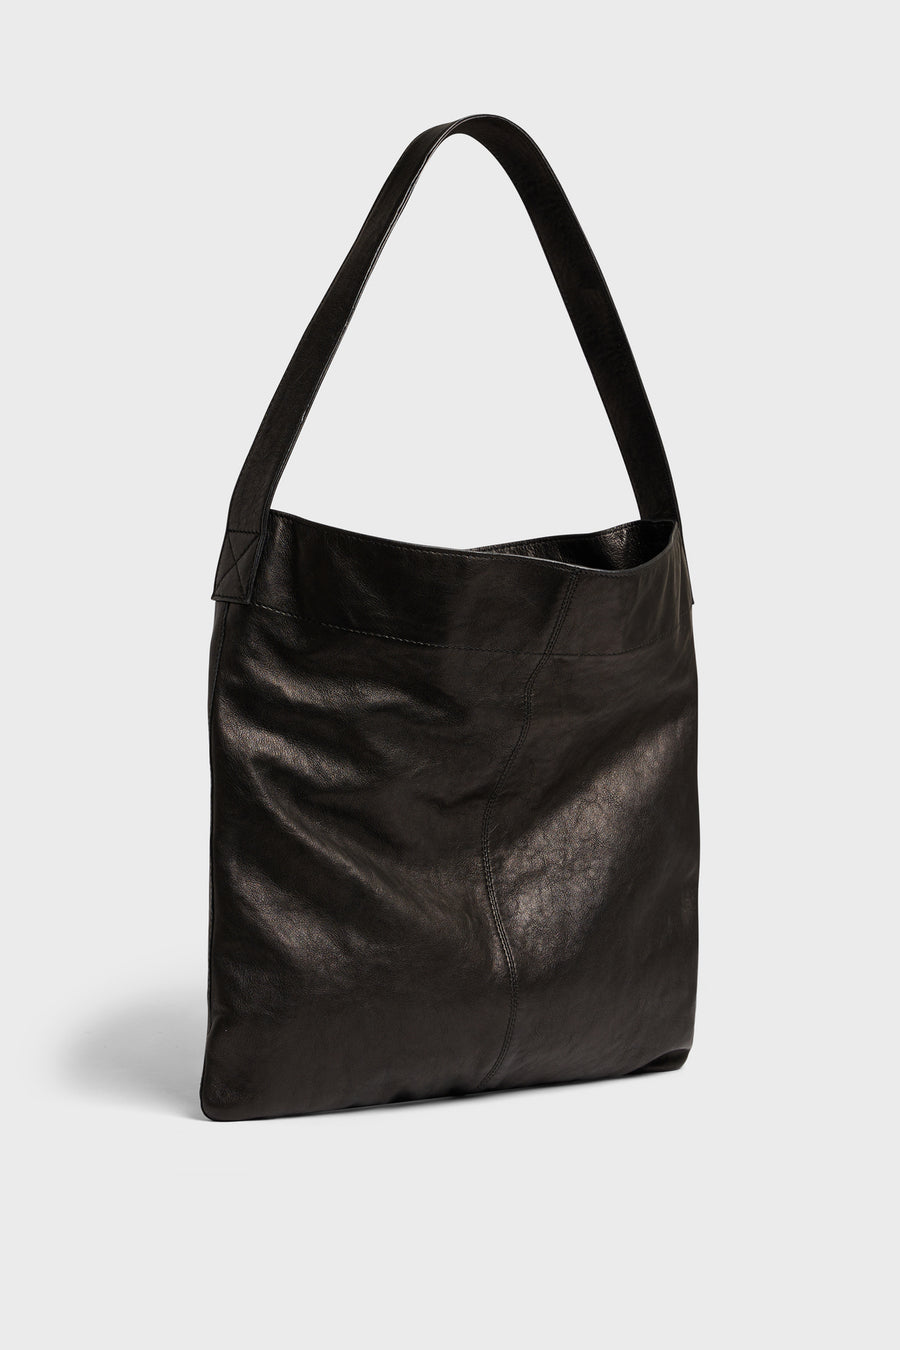 Bag Lady Dxs91x462 Black